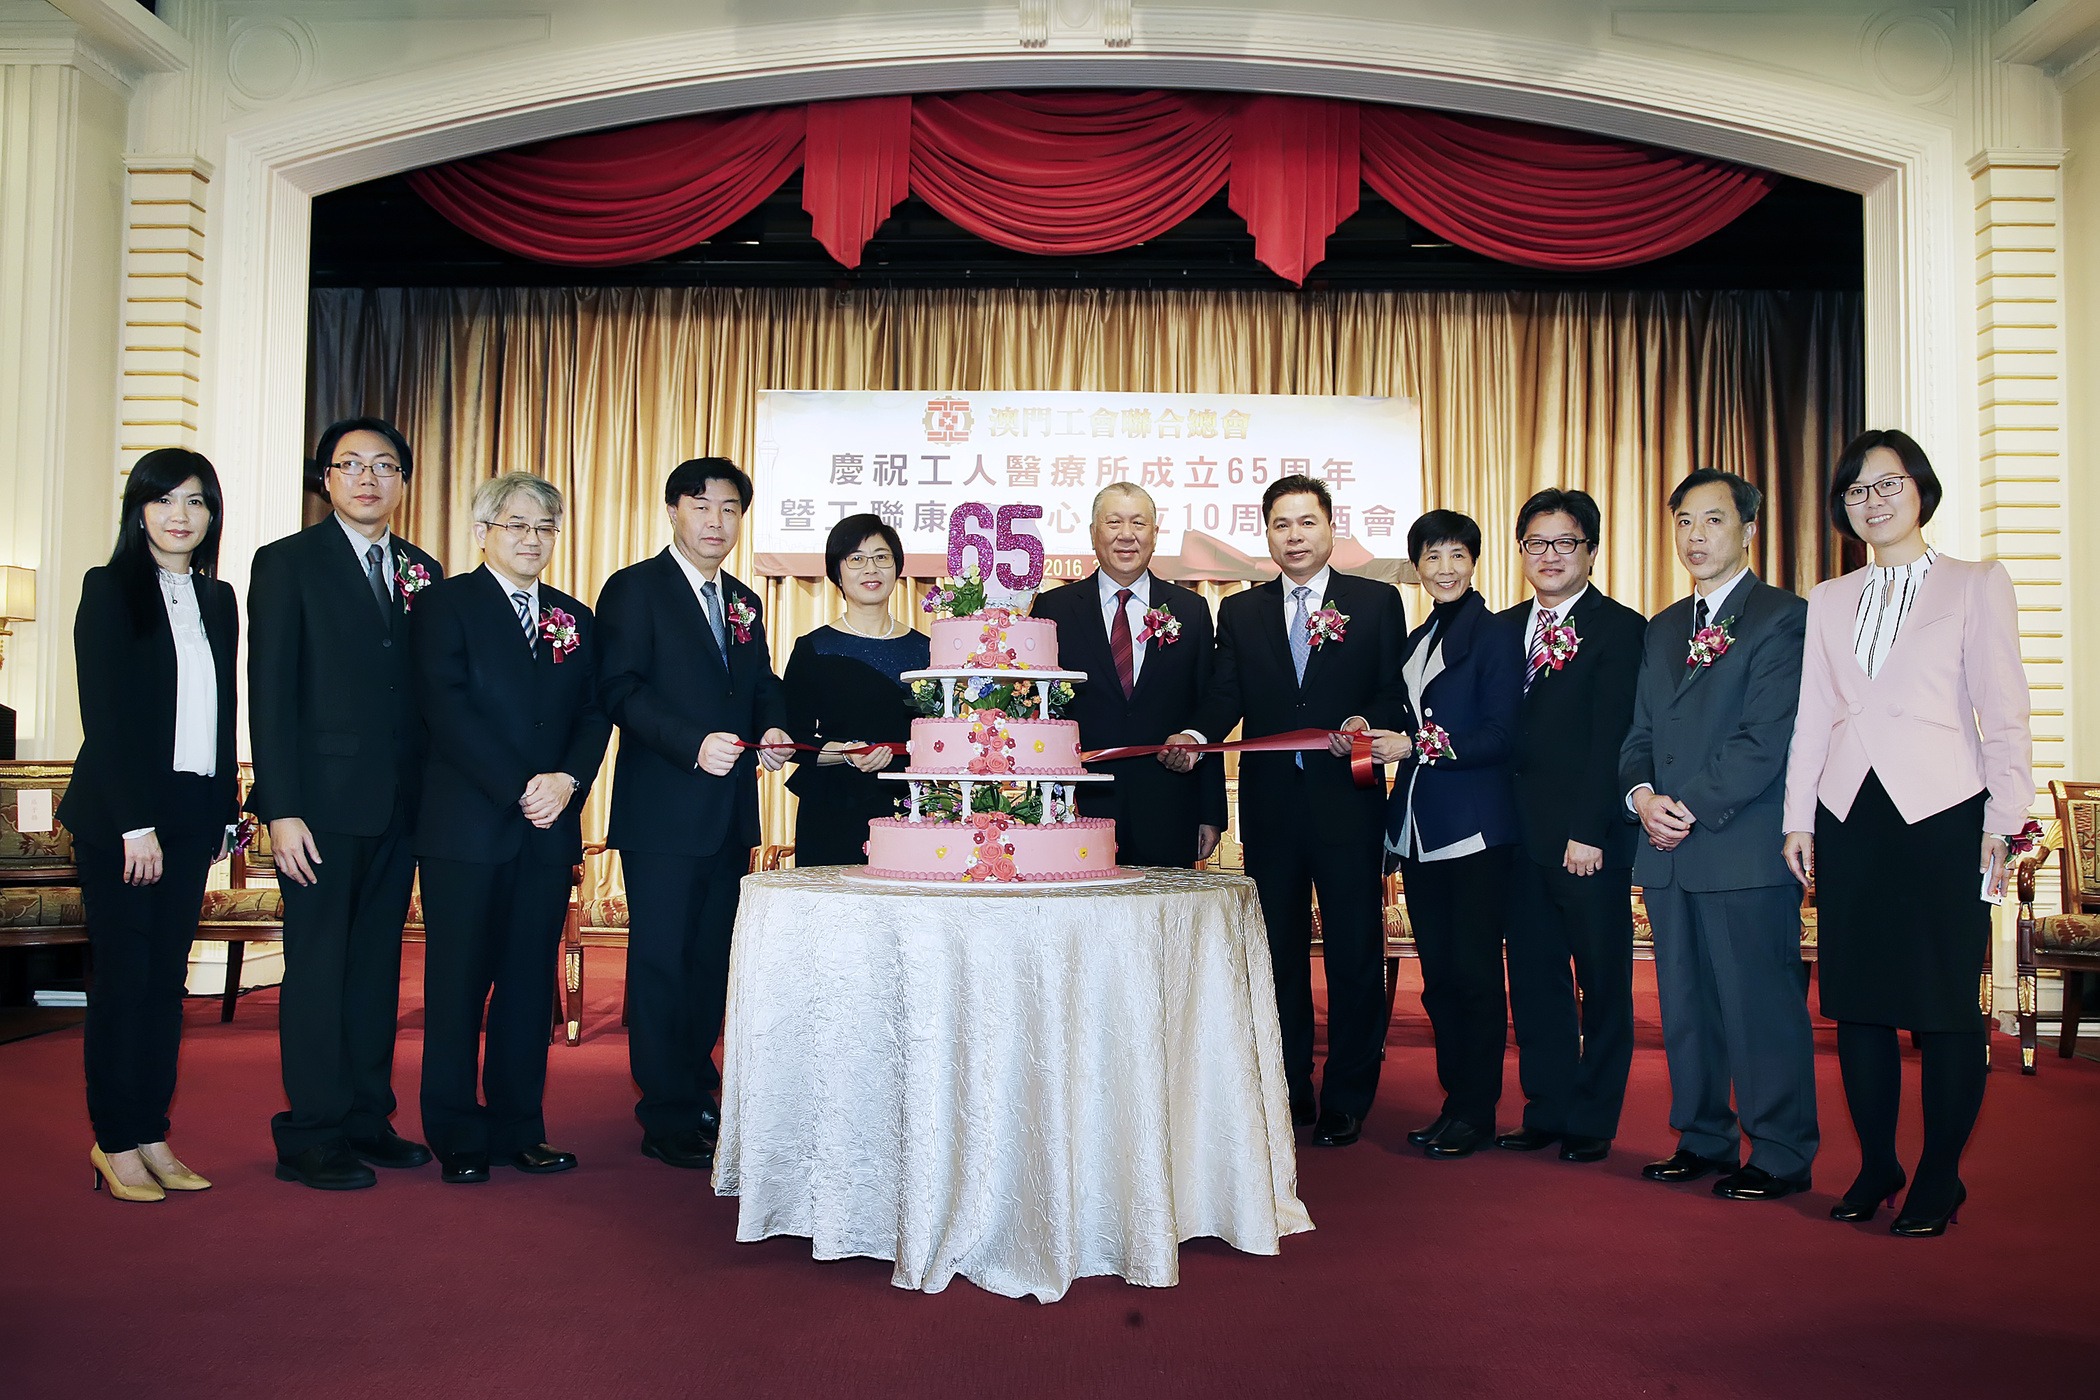 行政法务司司长陈海帆出席庆祝工人医疗所成立 65 周年暨工联康复中心成立10 周年酒会